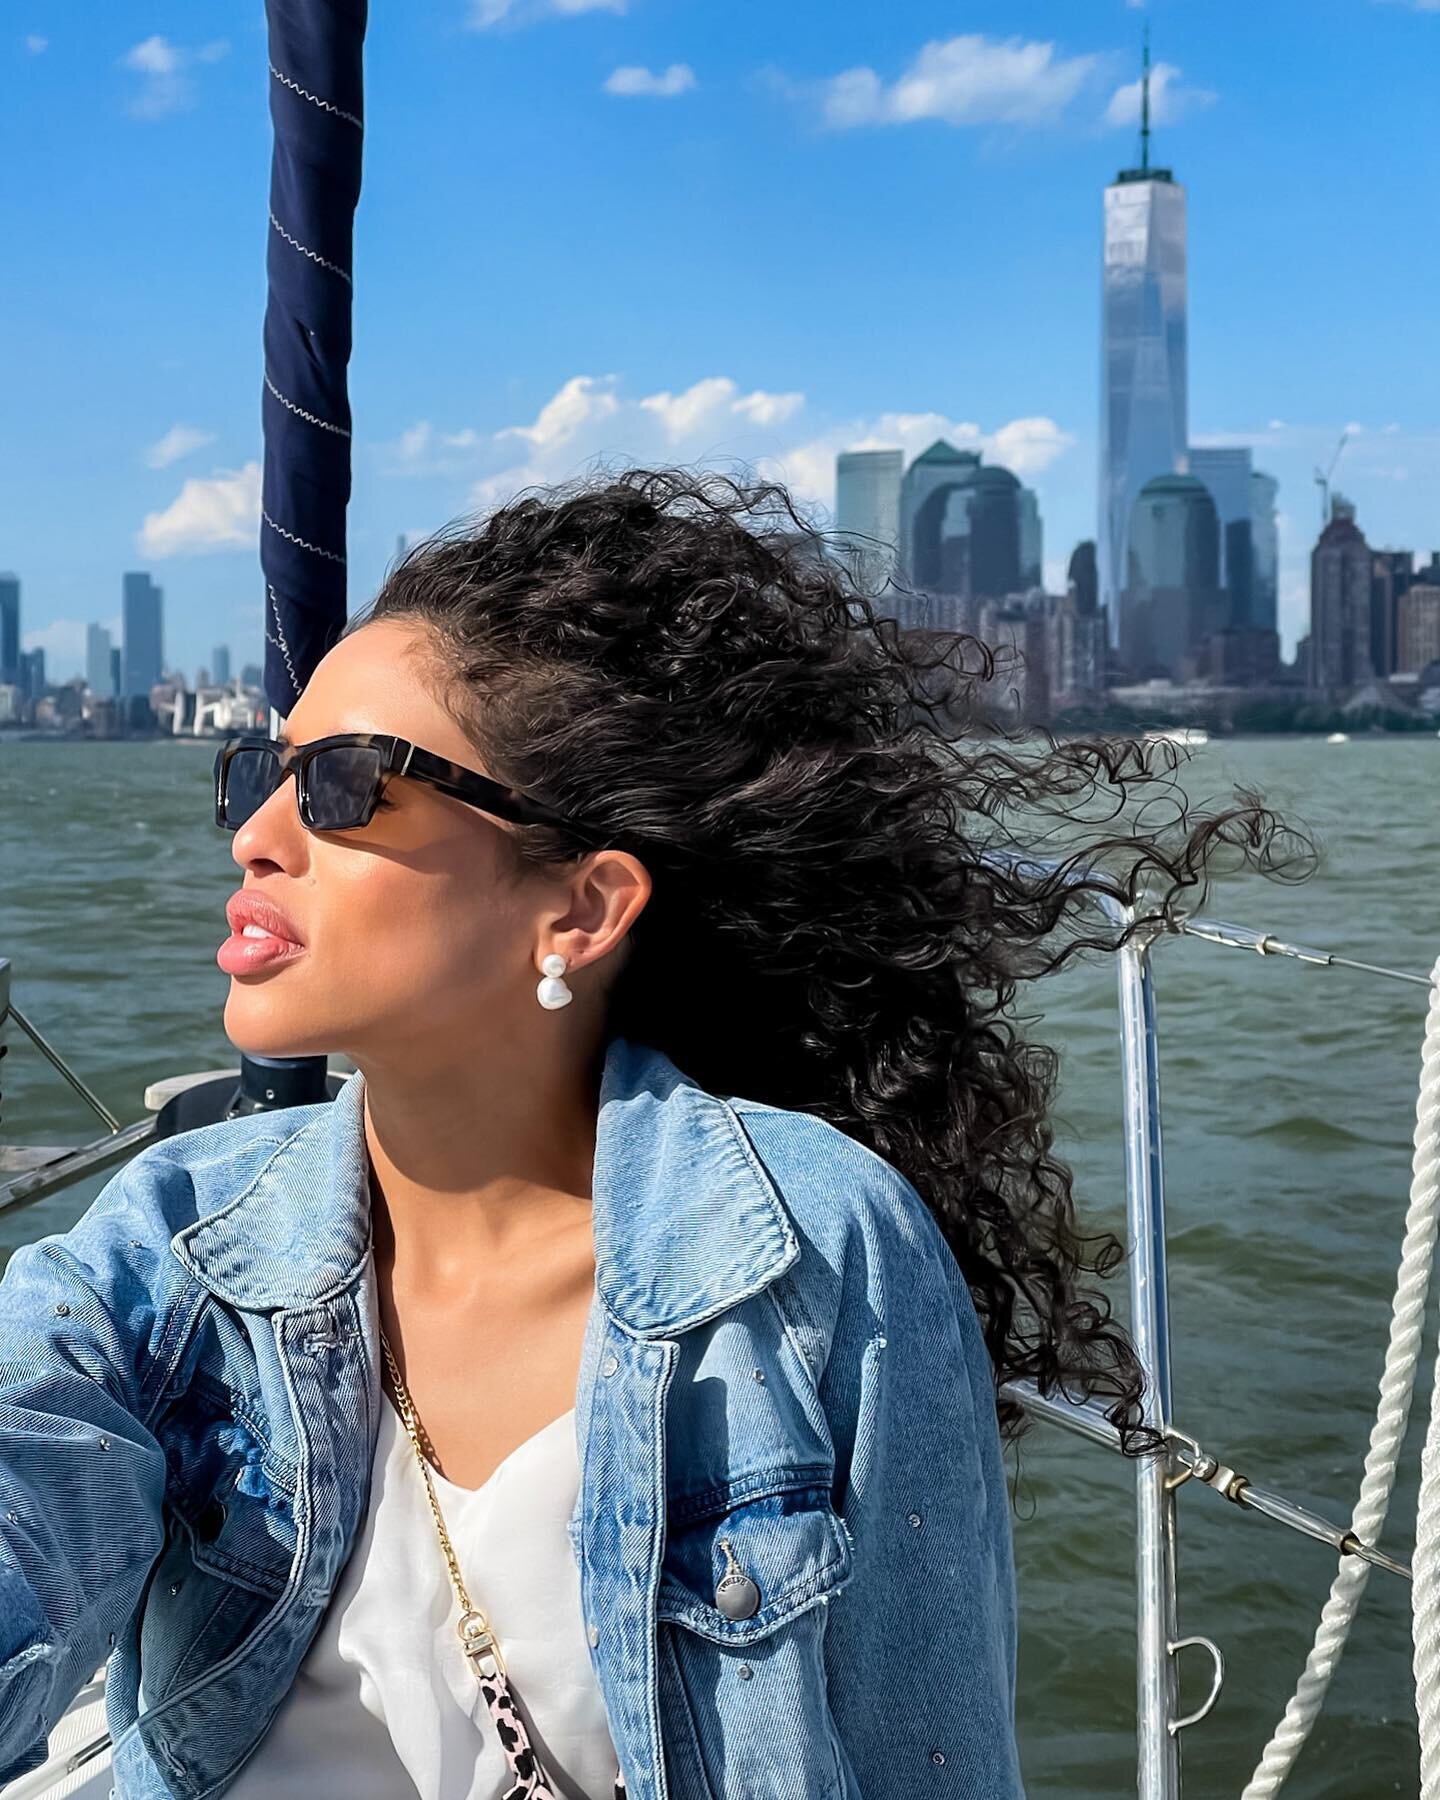 #Sailing into #Summer 🌞⛵️ #NYC